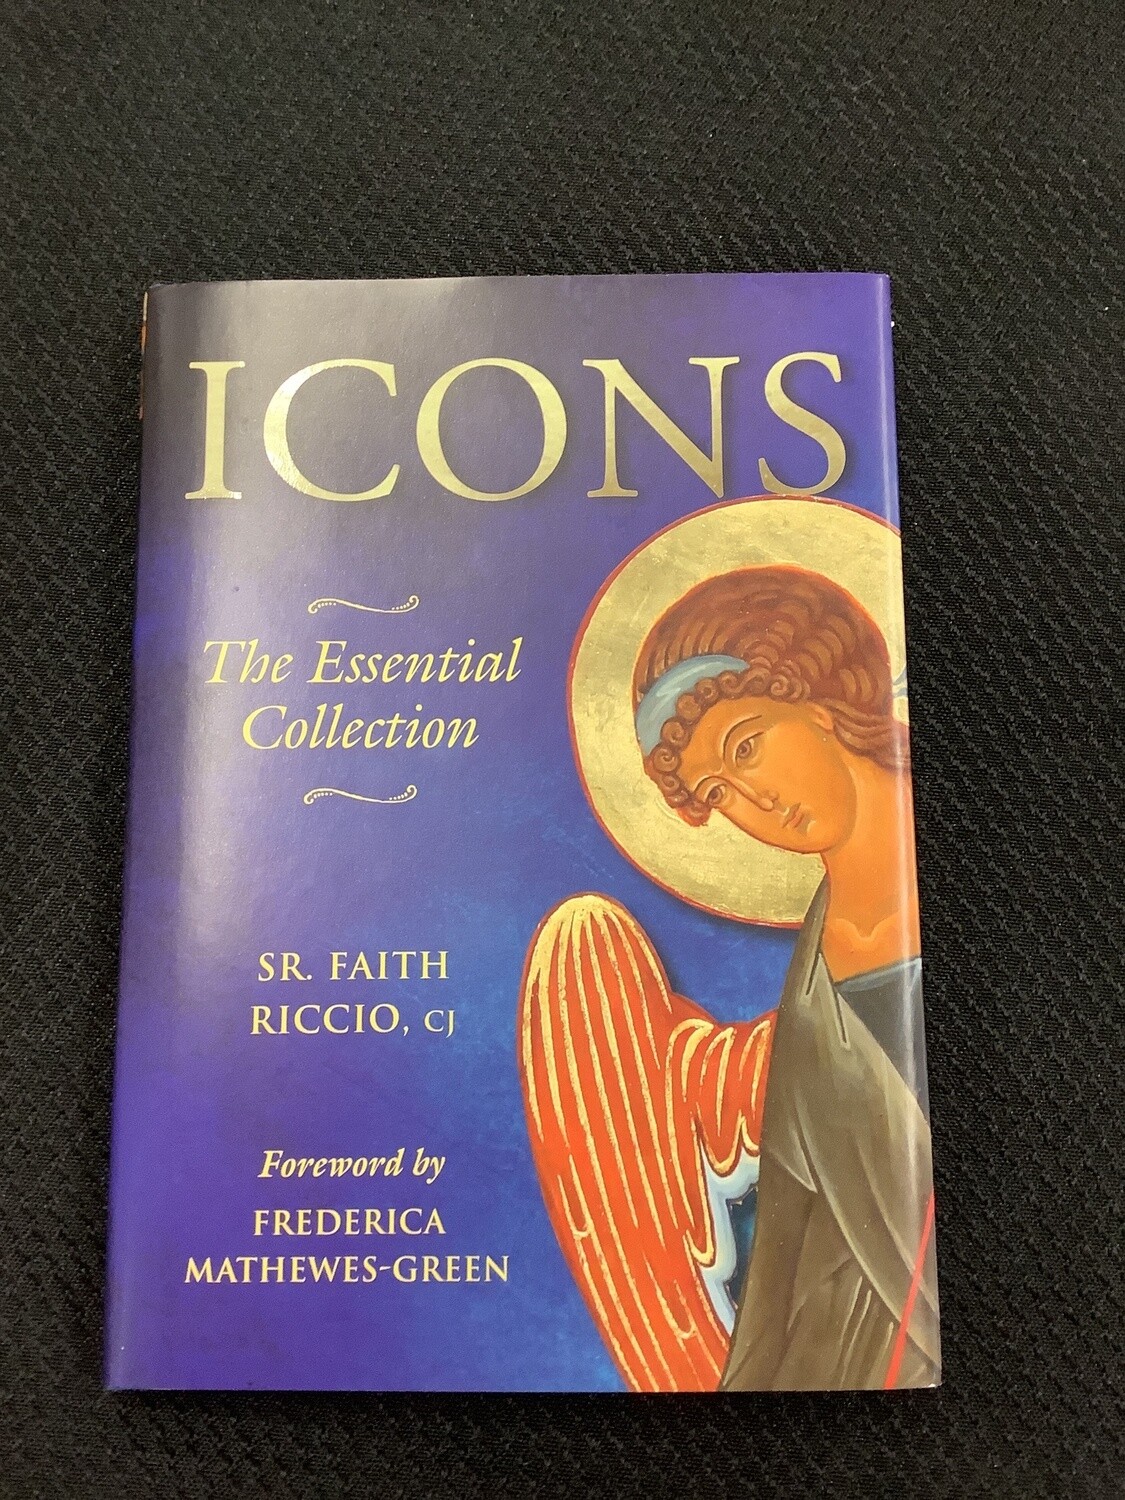 Icons The Essential Collection - Sr. Faith Riccio, CJ